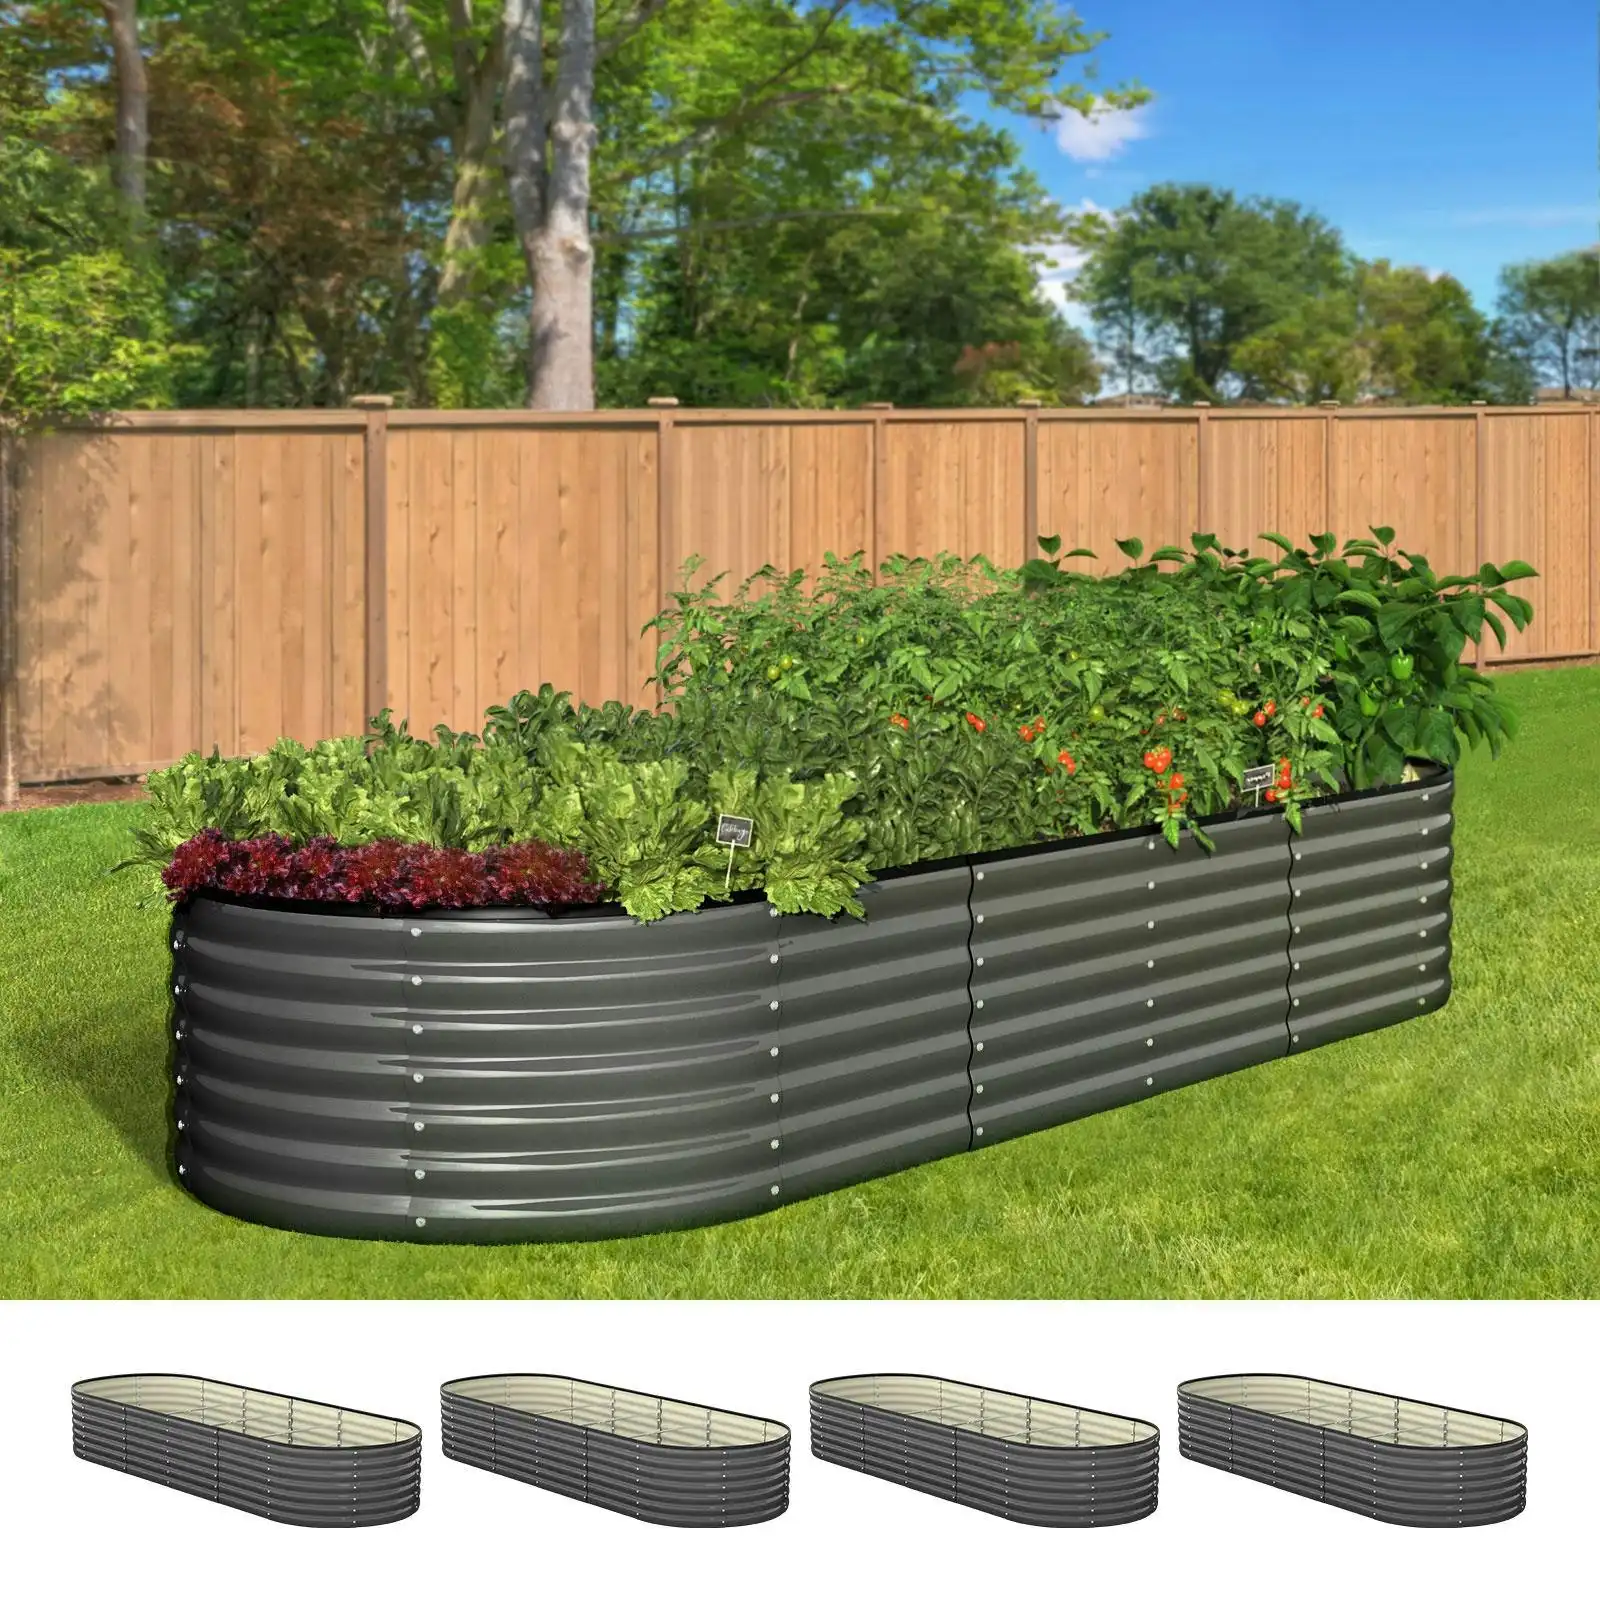 Livsip x4 Raised Garden Bed Kit Planter Oval Galvanised Steel 240cmX80cmX56cm